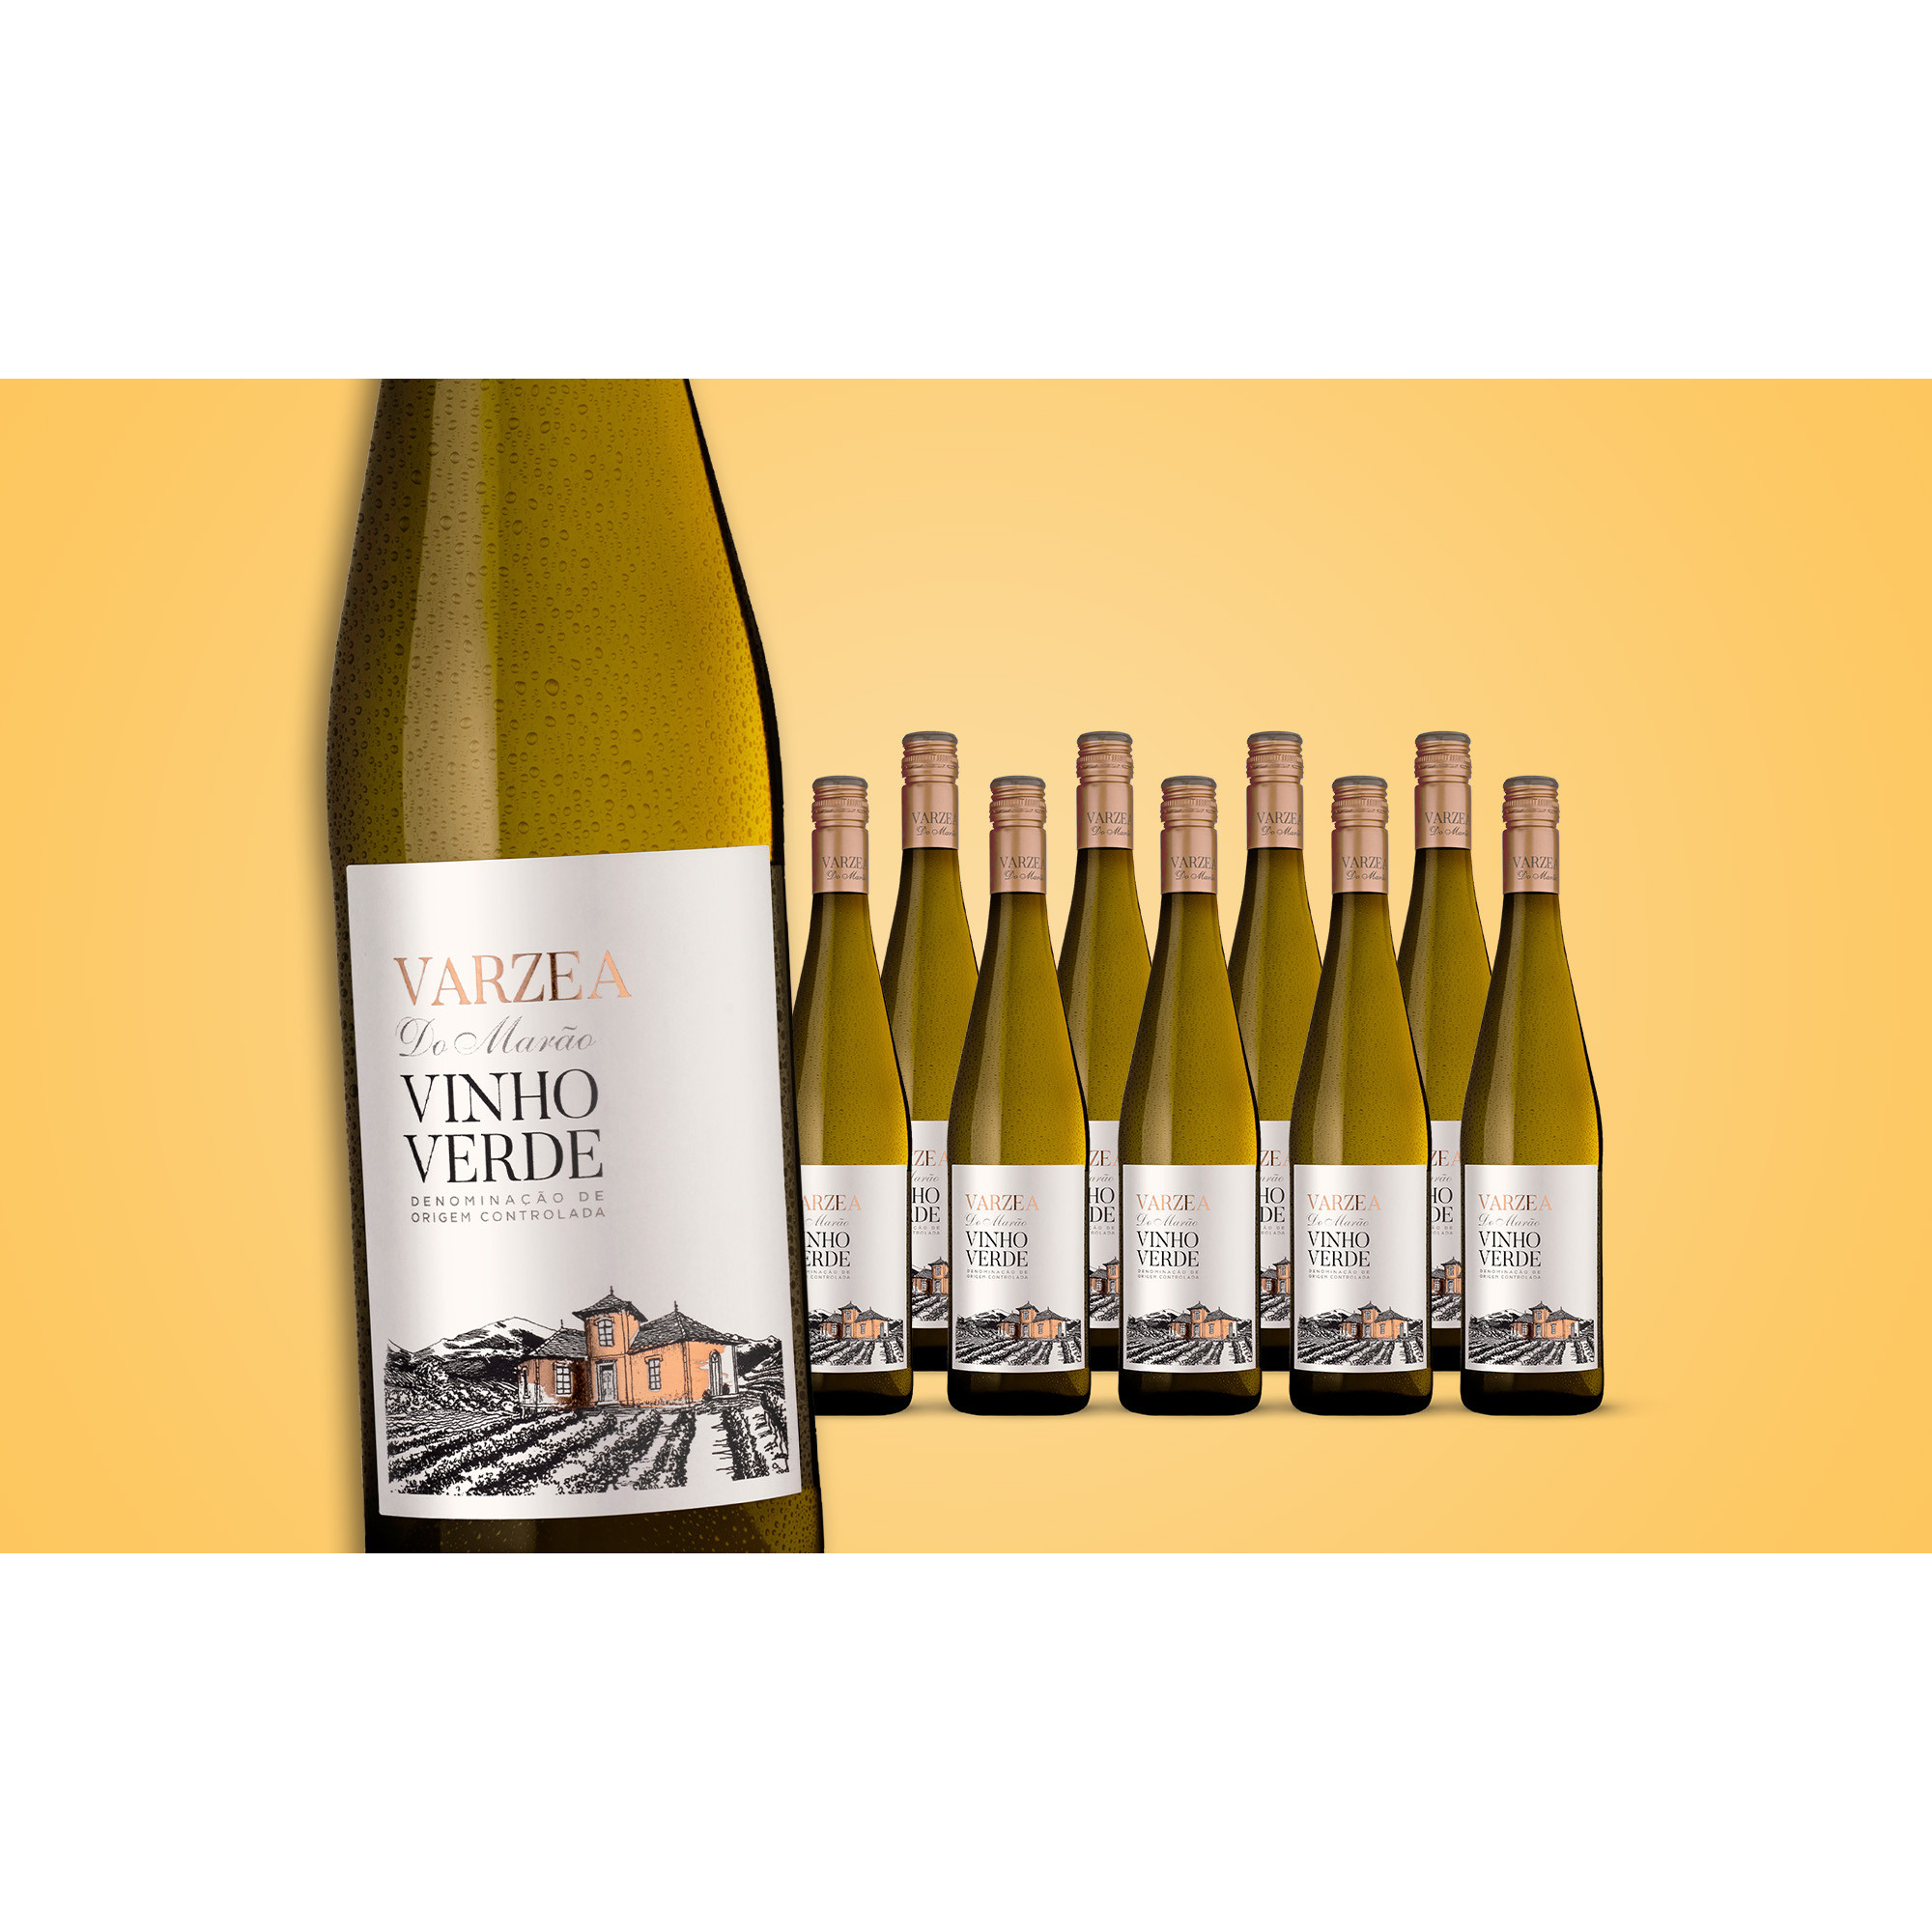 Varzea Do Marão Vinho Verde 2021  7.5L Trocken Weinpaket aus Spanien 34971 vinos DE